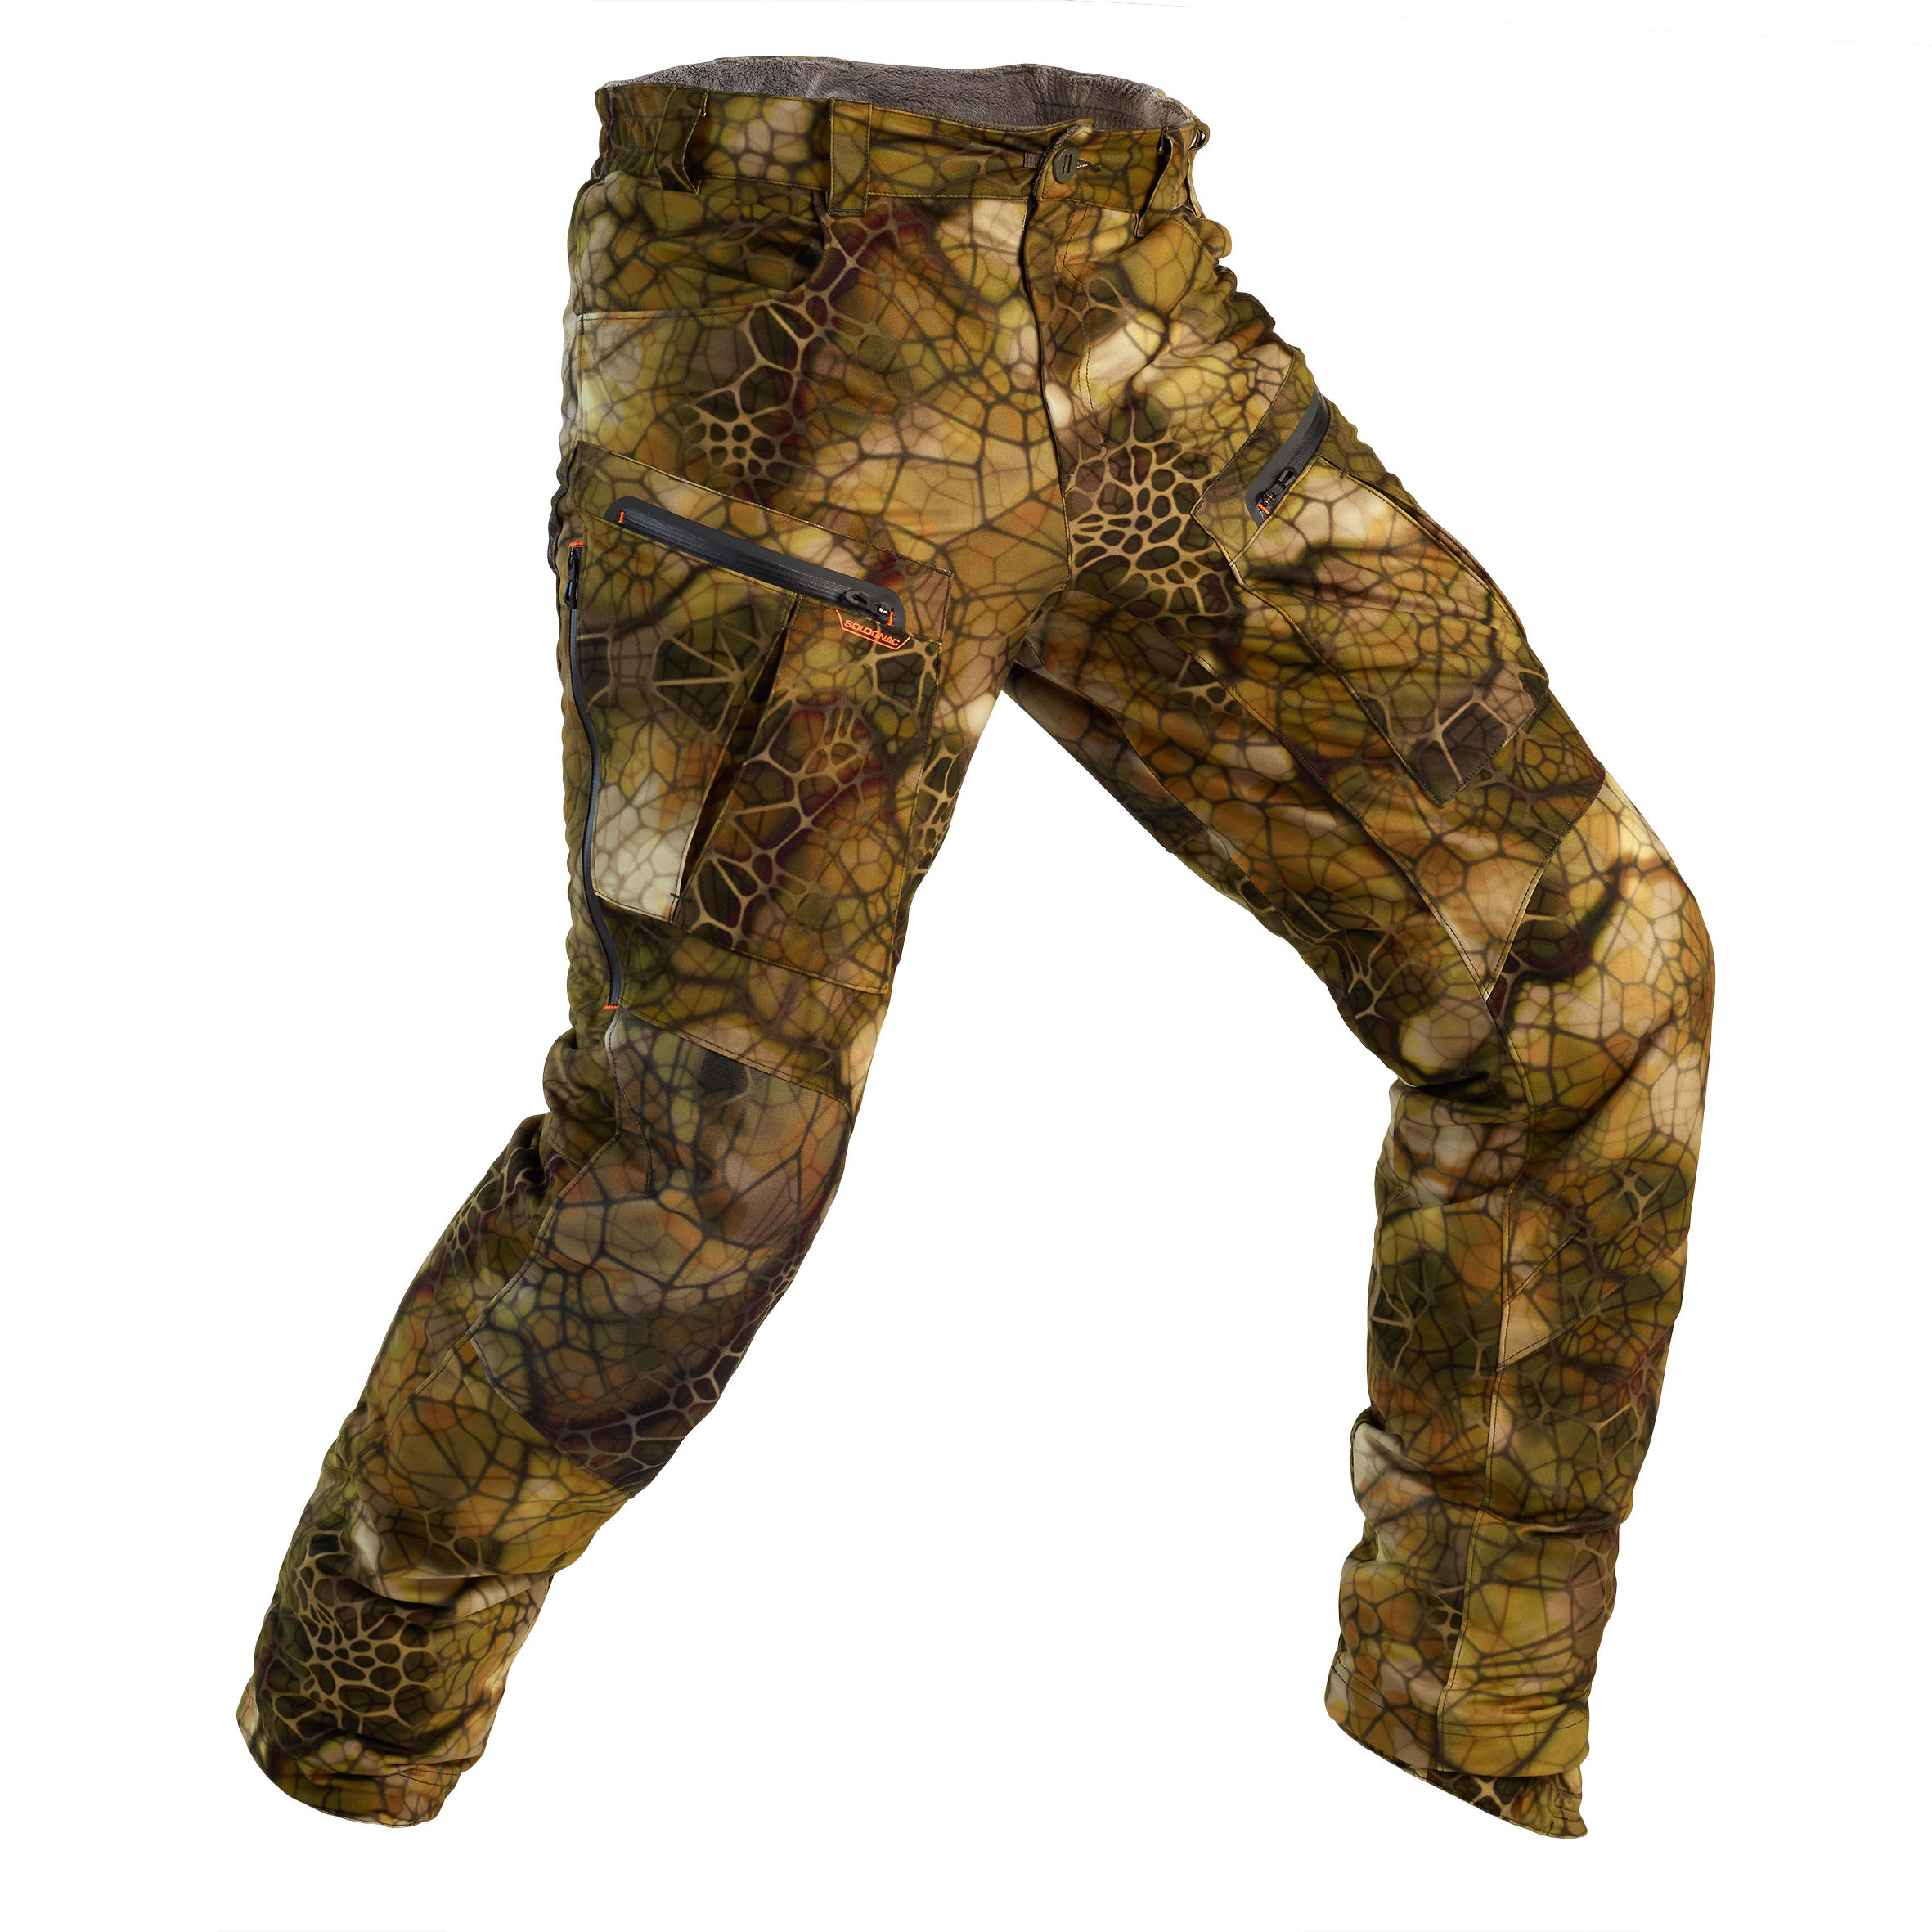 Pantalon chasse Silencieux Imperméable Chaud 900 camouflage FURTIV - SOLOGNAC